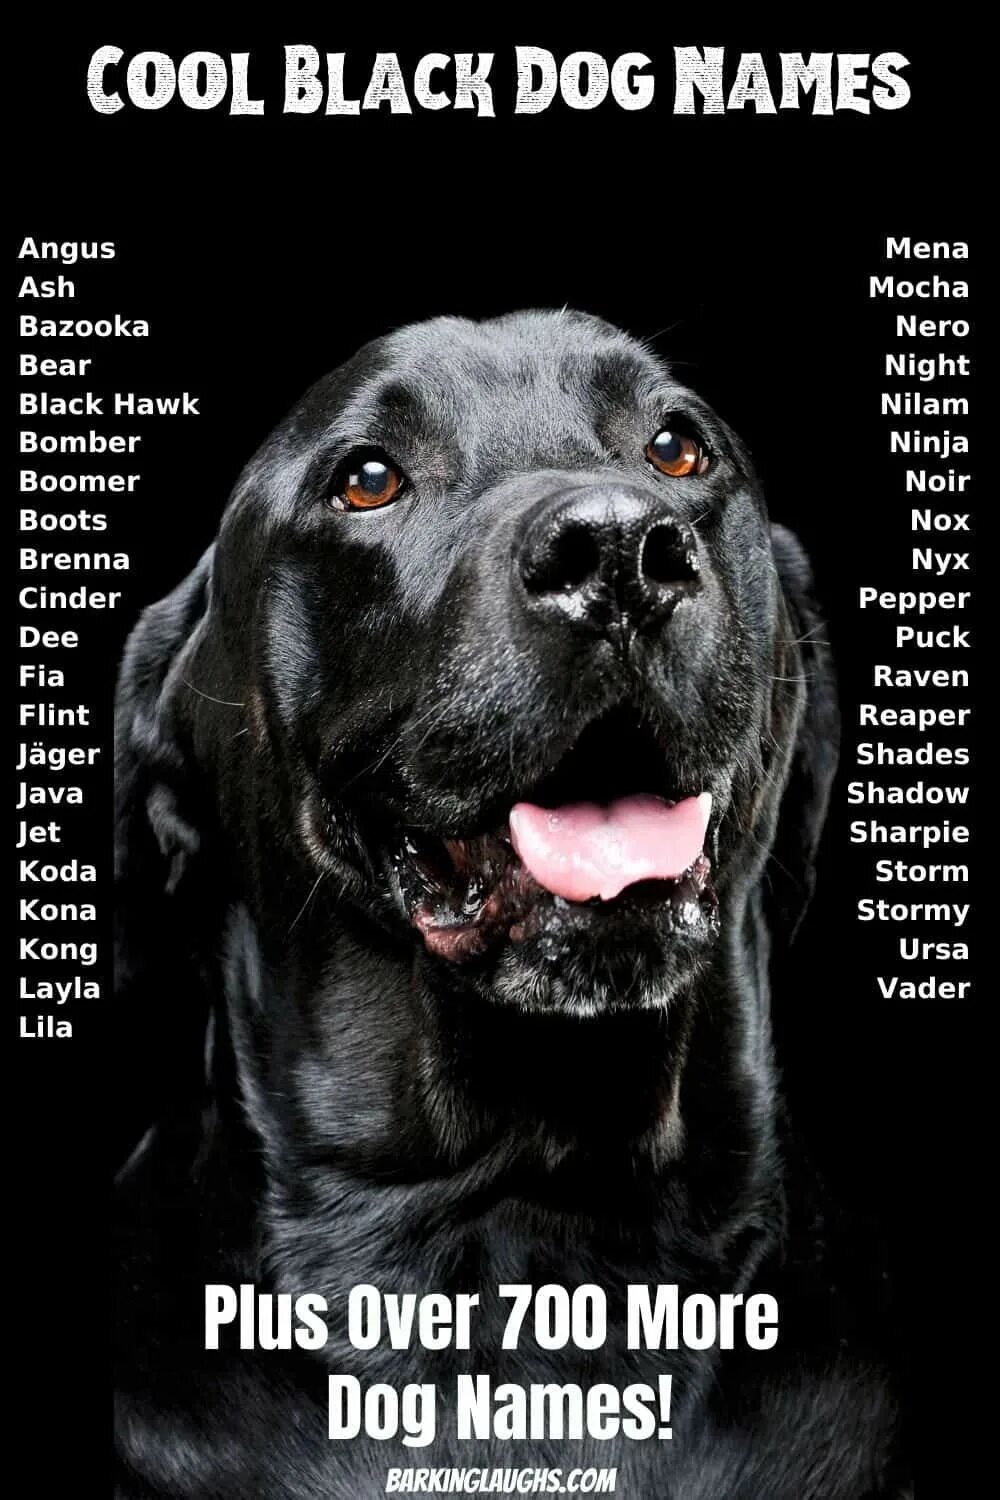 Клички для больших собак. Имена для собак. Кличка для черной собаки. Собачьи клички. Клички для черных собак.